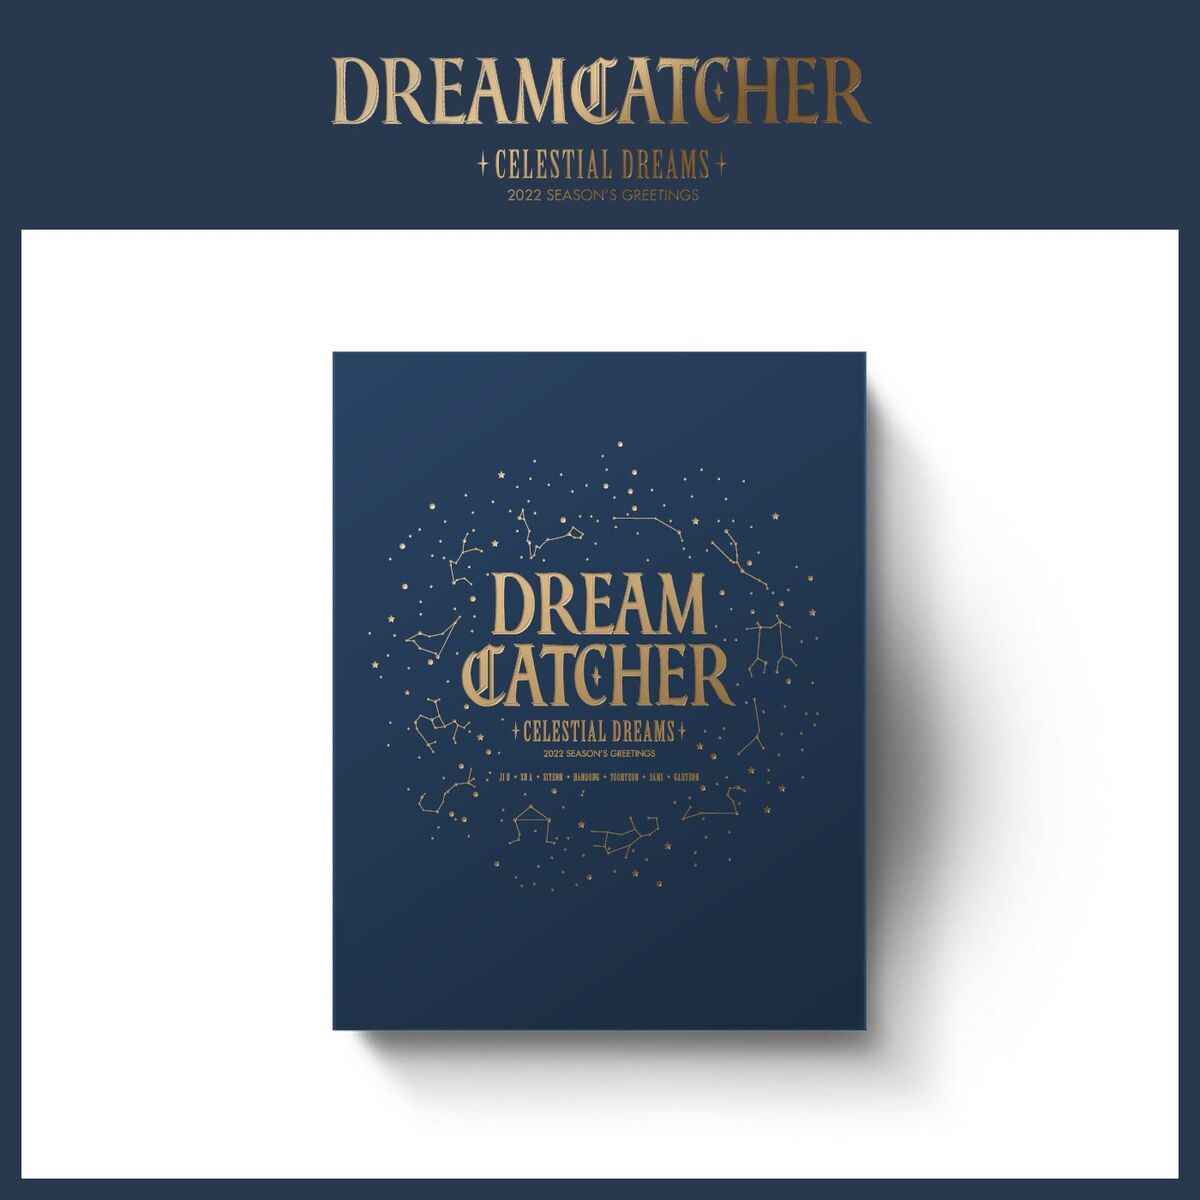 Dreamcatcher 2022 SEASON’S GREETINGS | Dreamcatcher Wiki | Fandom